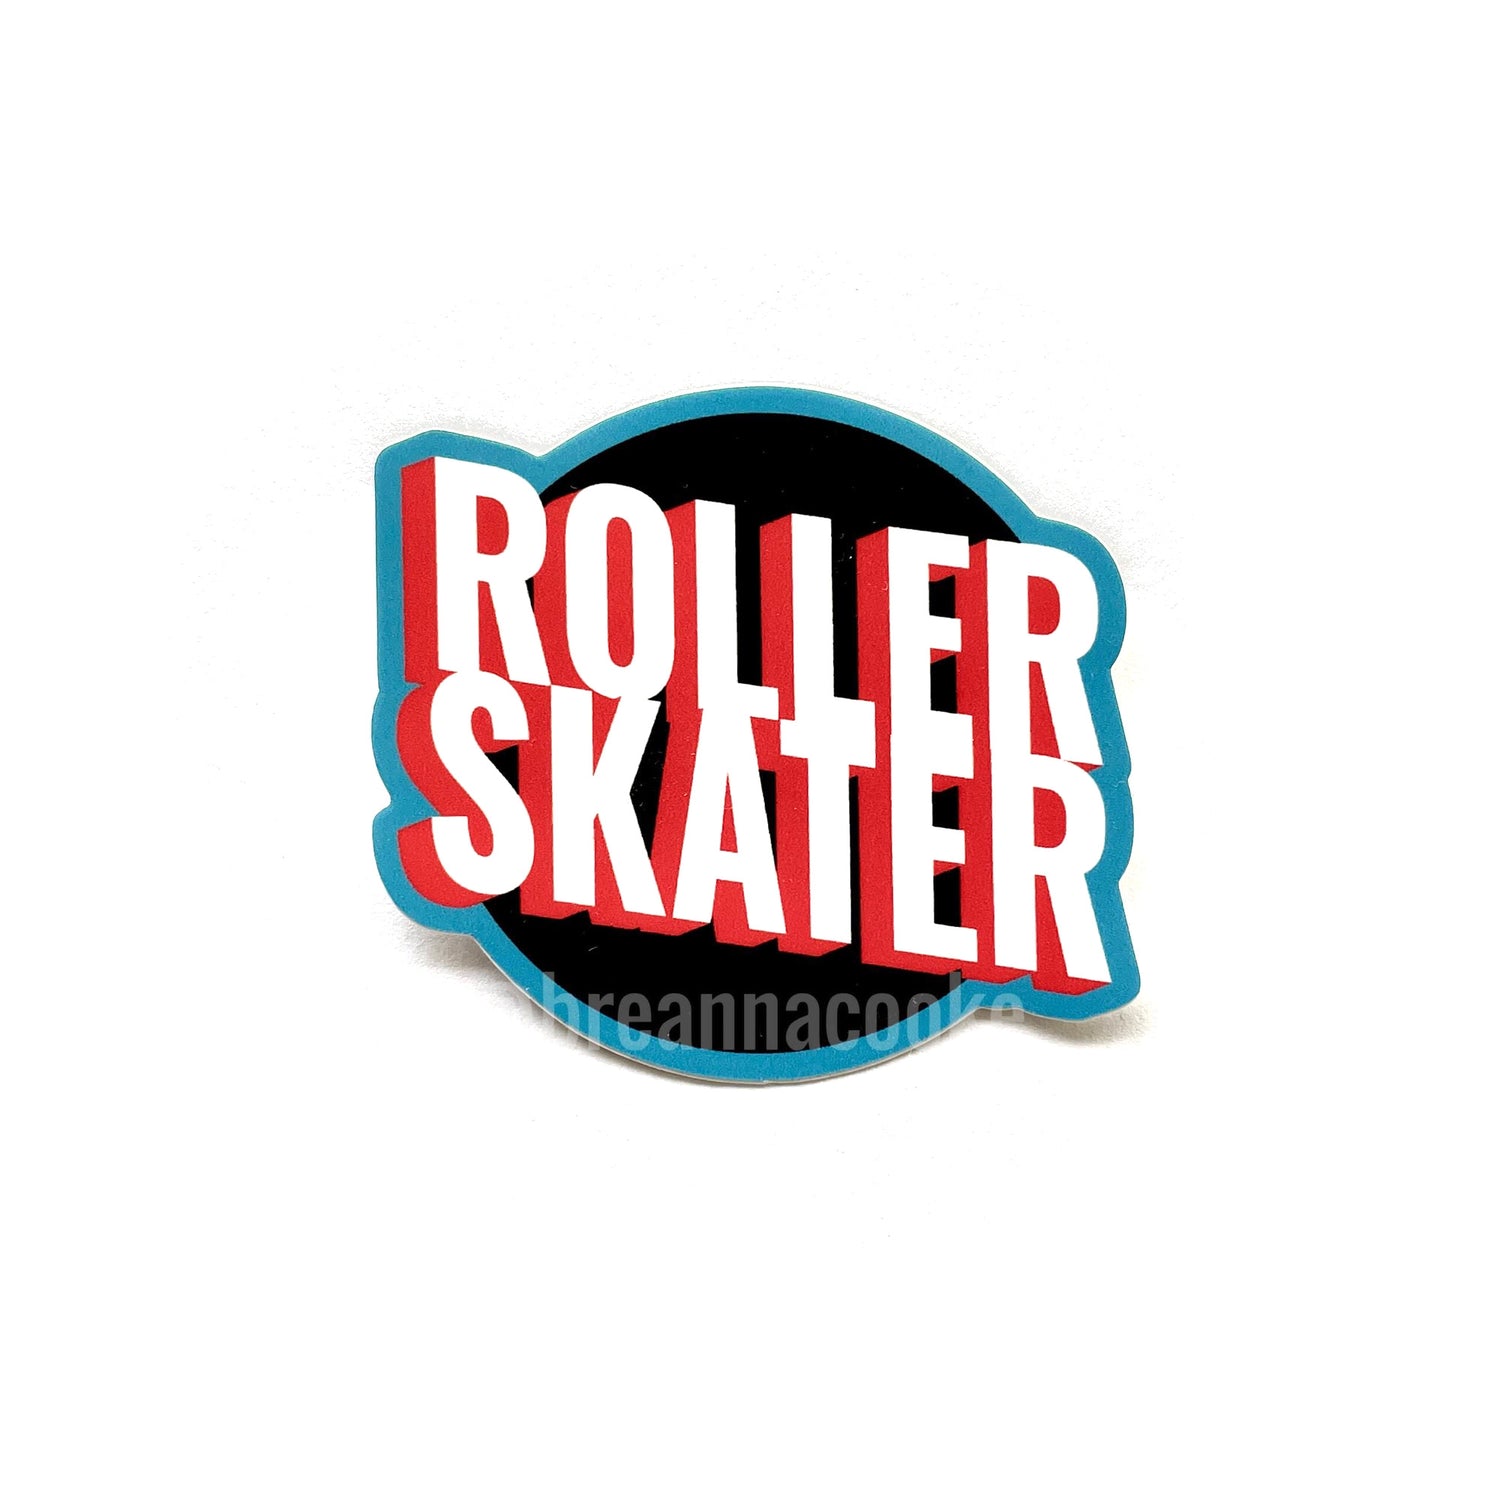 Rollerskating